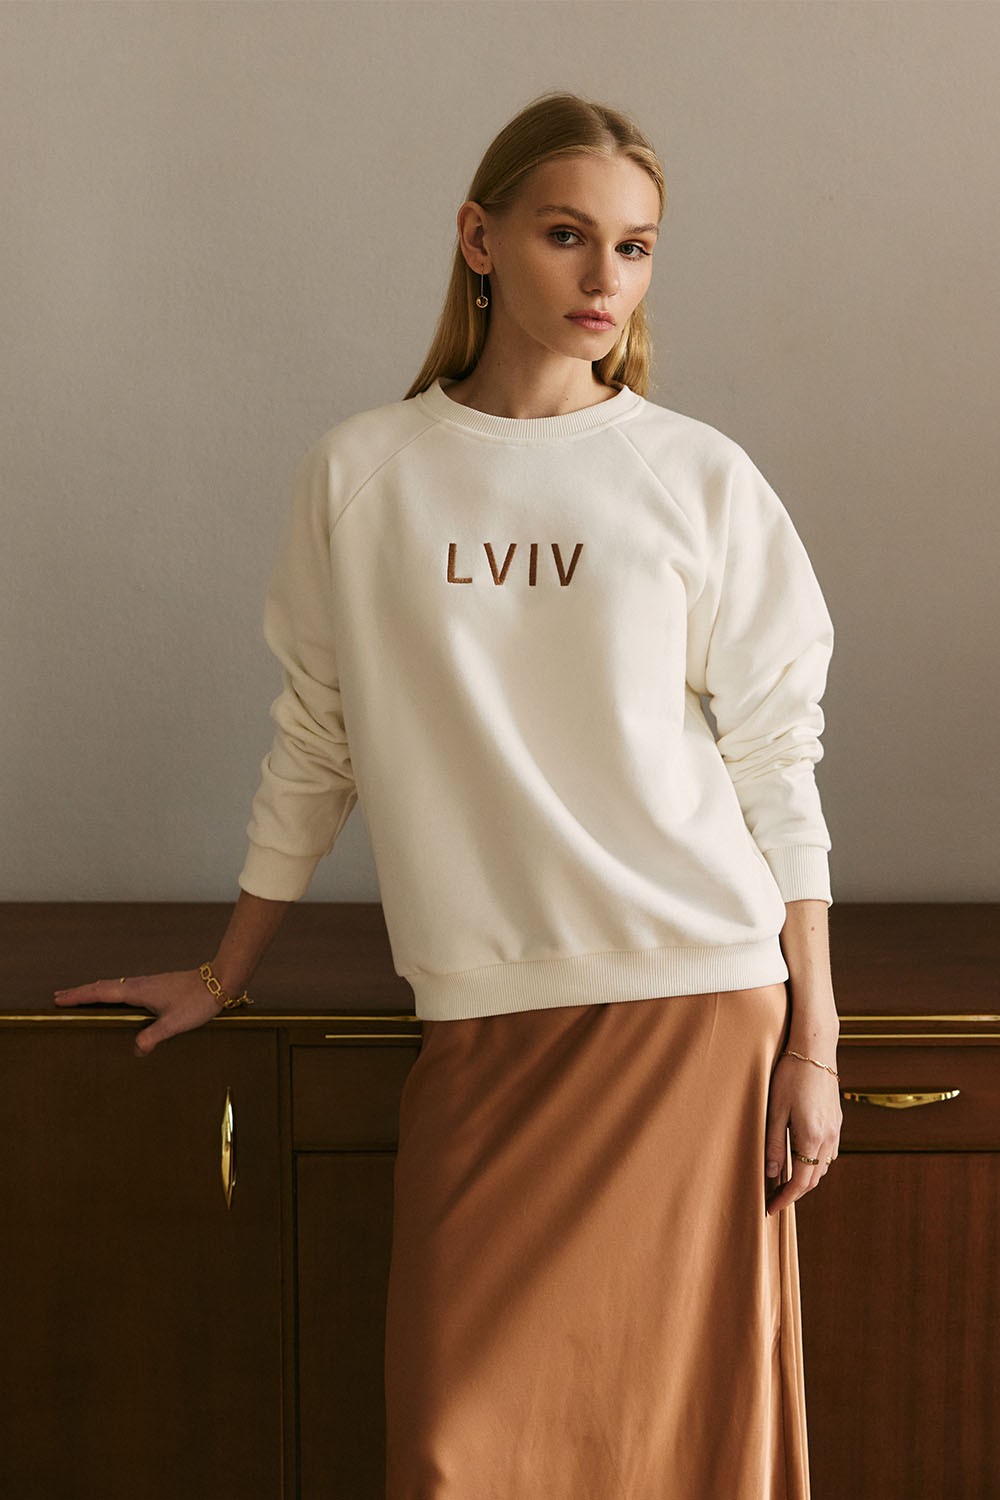 Embroidered sweatshirt 'LVIV'